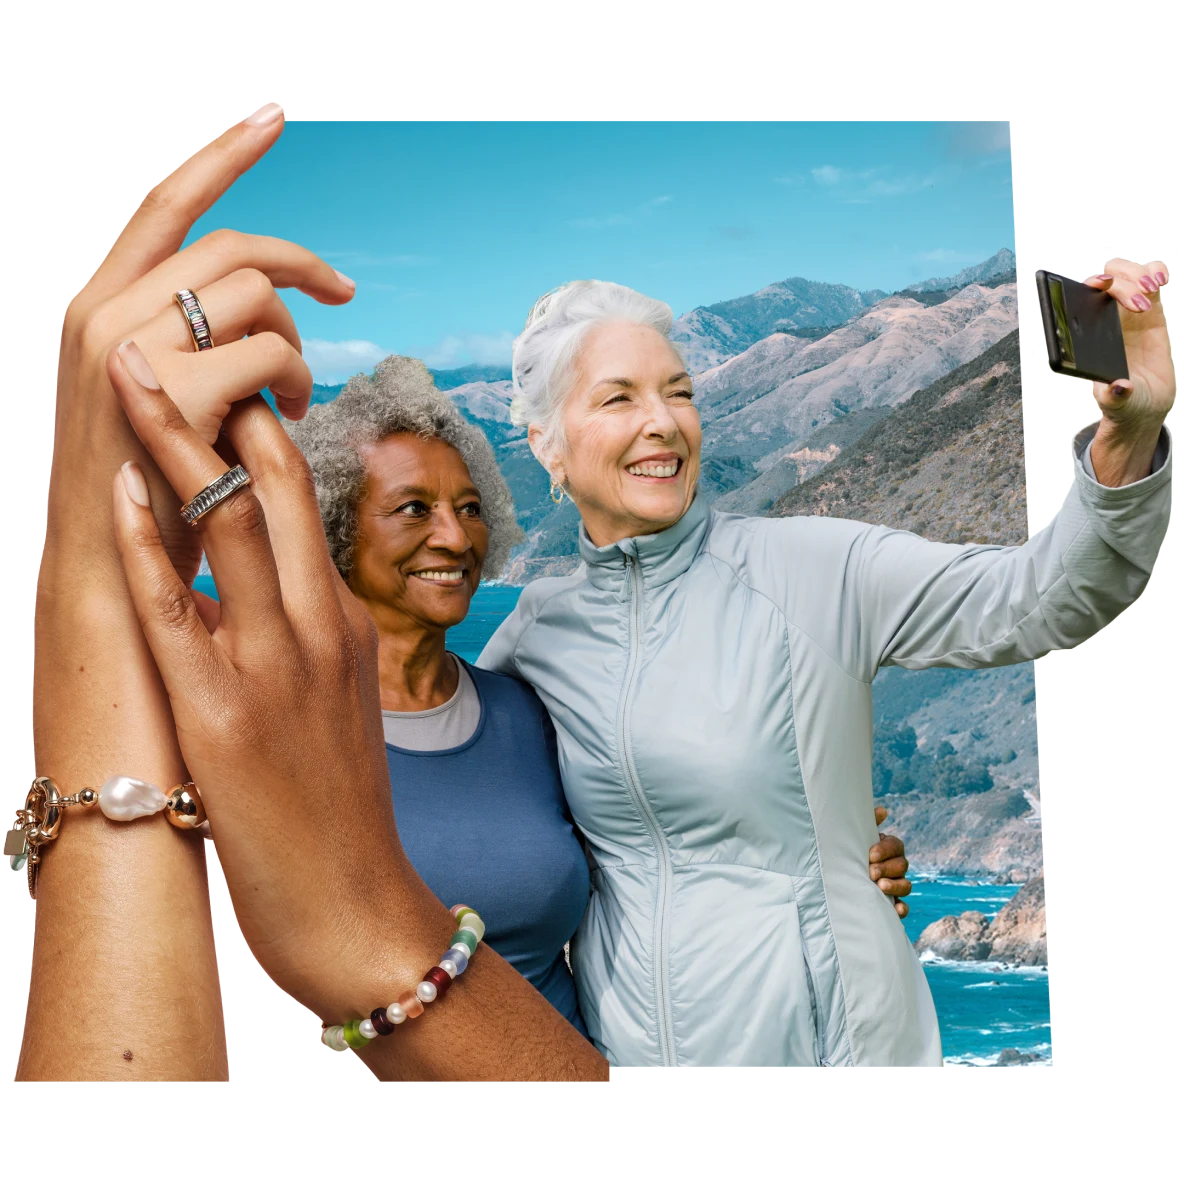 Manos con pulseras y anillos sujetándose entre sí a la izquierda. A la derecha, mujeres de piel clara y oscura sonriendo y tomándose una selfie con un fondo de montaña y cielo azul.